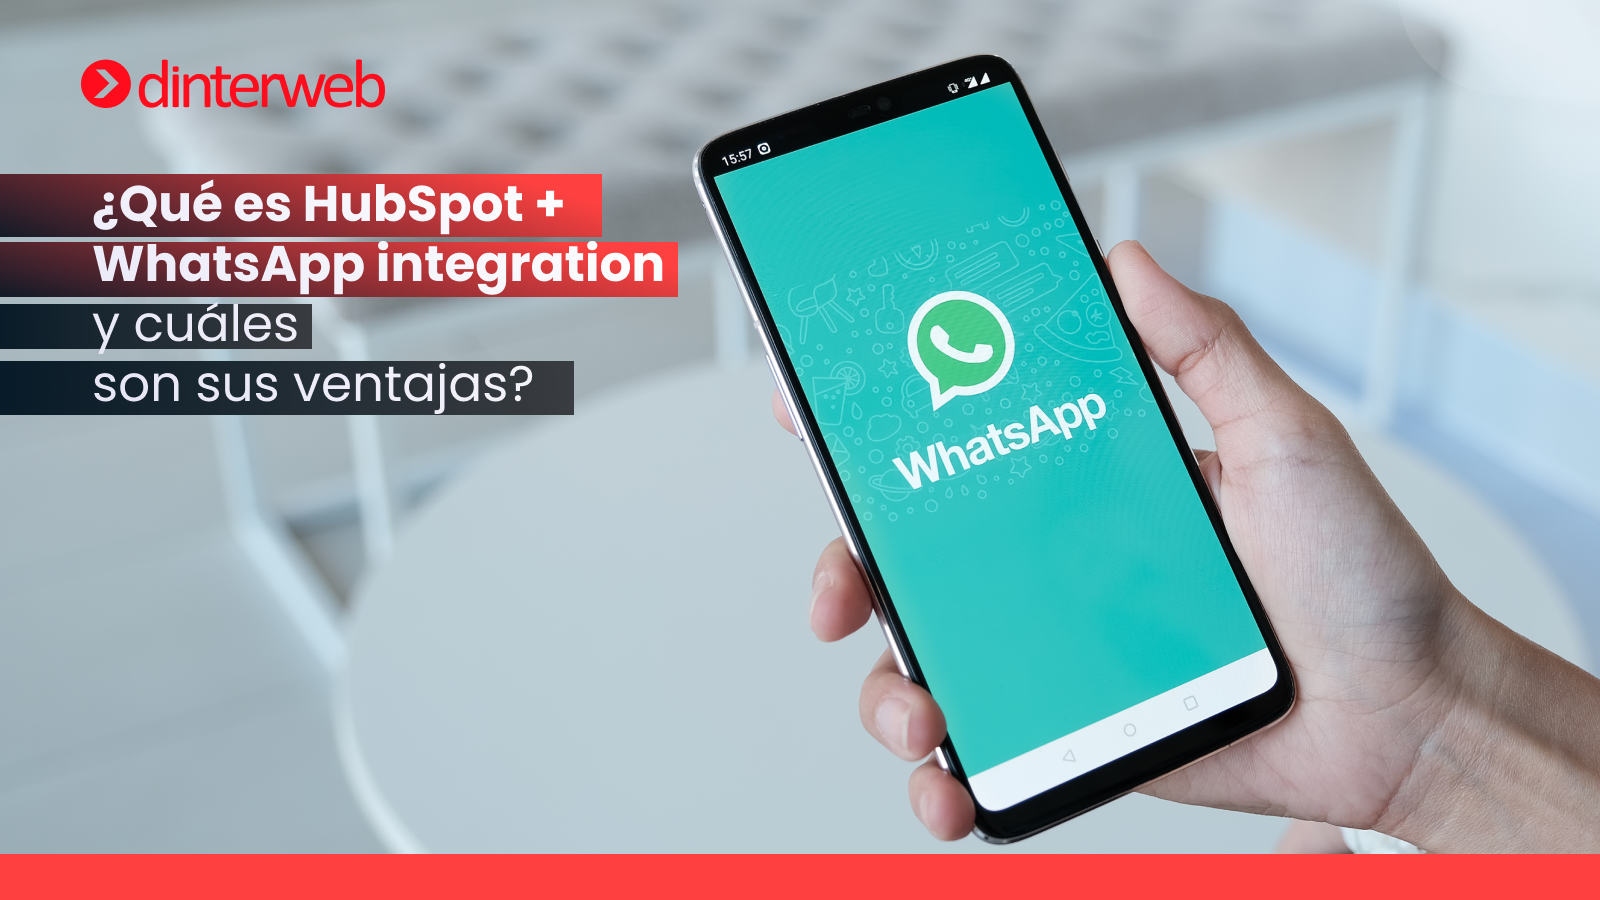 ¿Qué es HubSpot + WhatsApp integration y cuáles son sus ventajas?